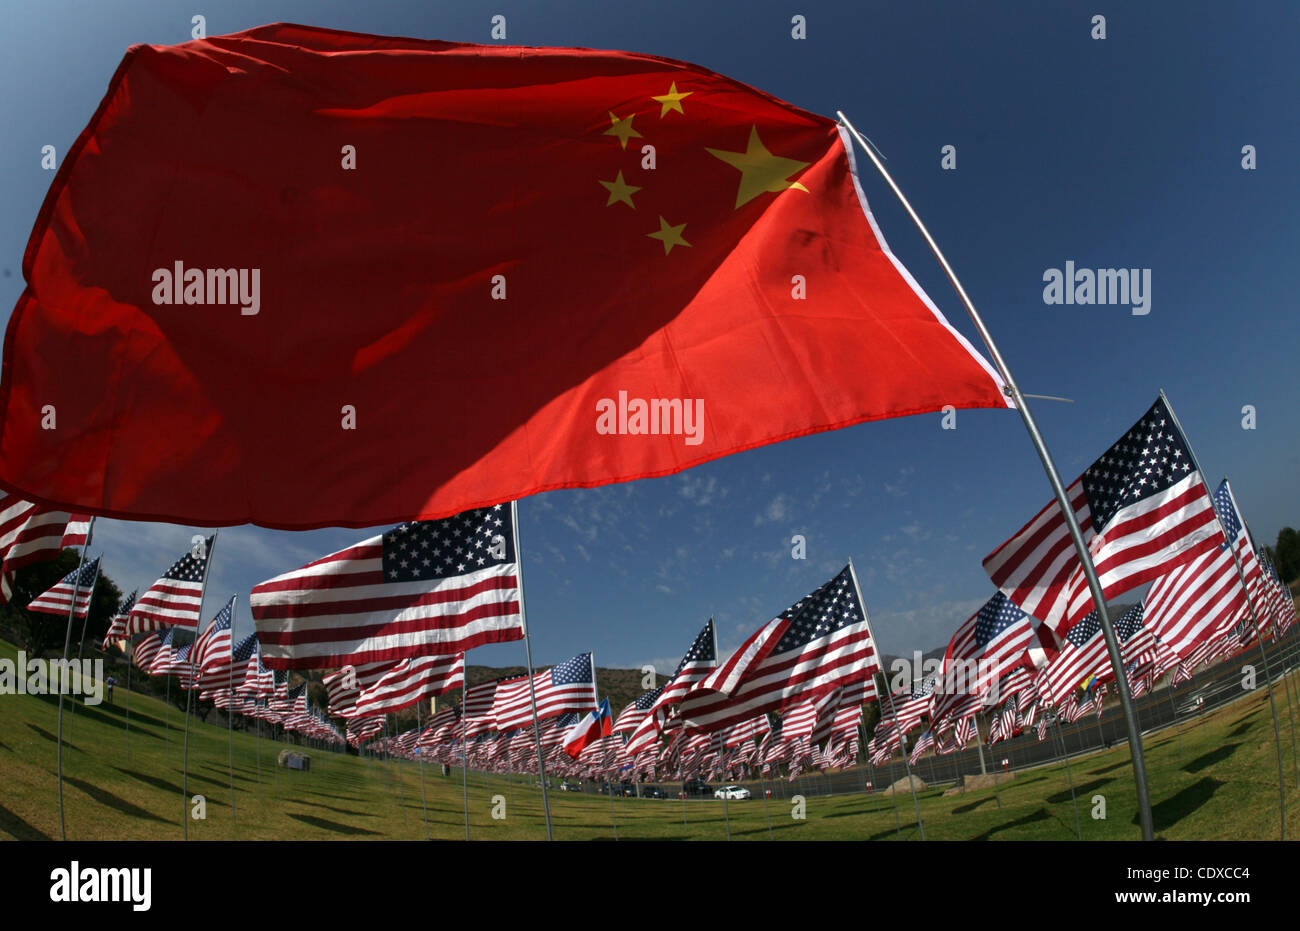 Eine chinesische Flagge steht unter drei Tausenden von amerikanischen Flaggen an einem Denkmal zu Ehren der Opfer der Terroranschläge 11. September 2001, eingestellt auf Sonntag, 11. September 2011 von Freiwilligen auf dem Campus Rasen der Pepperdine University in Malibu, Kalifornien. (Foto von Ringo Chiu / Zuma Press) Stockfoto